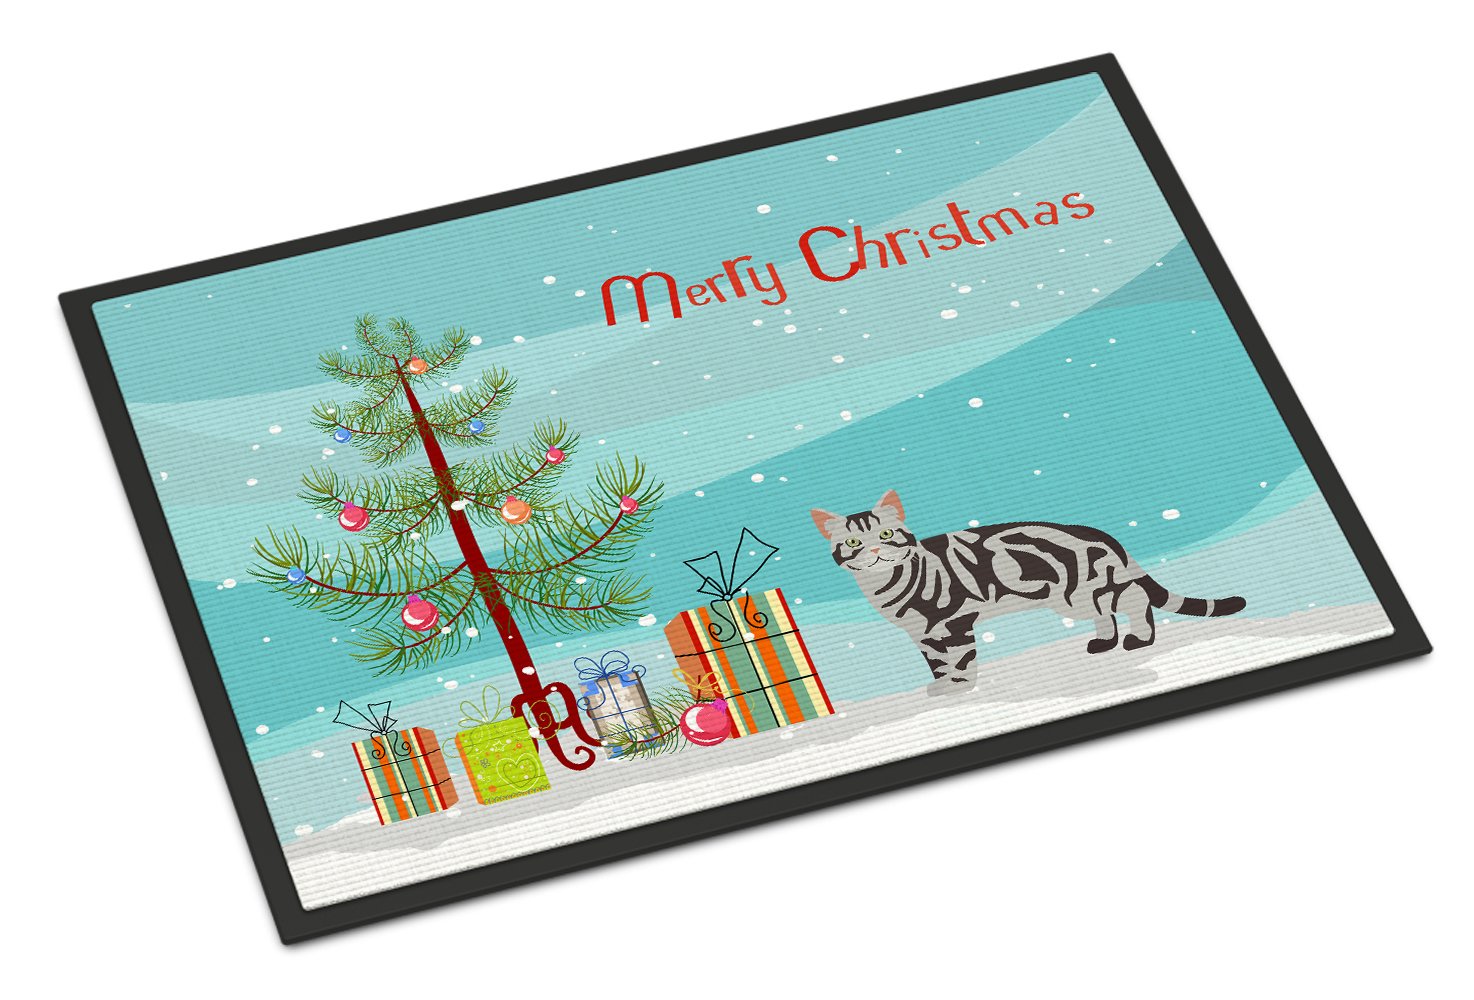 American Shorthair #1 Cat Merry Christmas Indoor or Outdoor Mat 24x36 CK4554JMAT by Caroline's Treasures